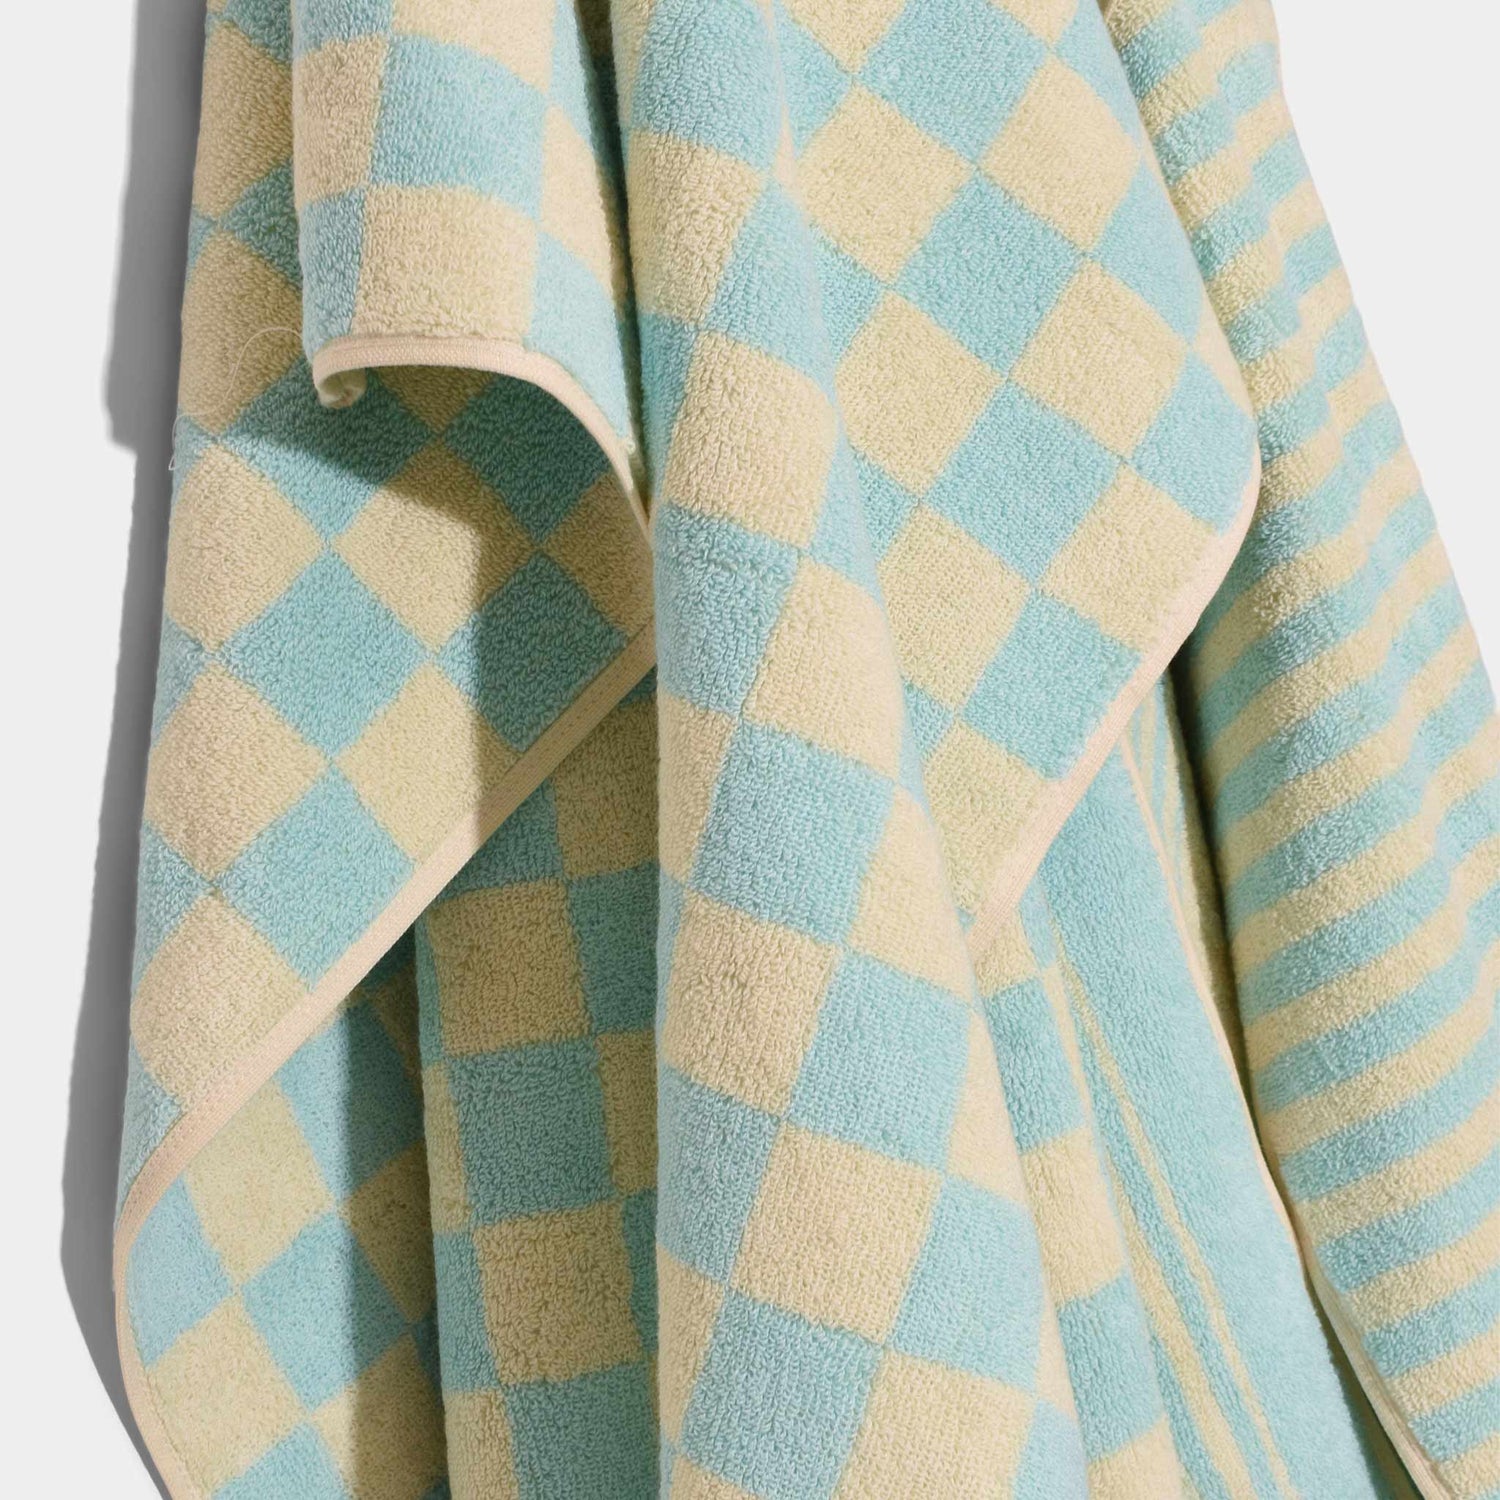 Towel Pale Blue